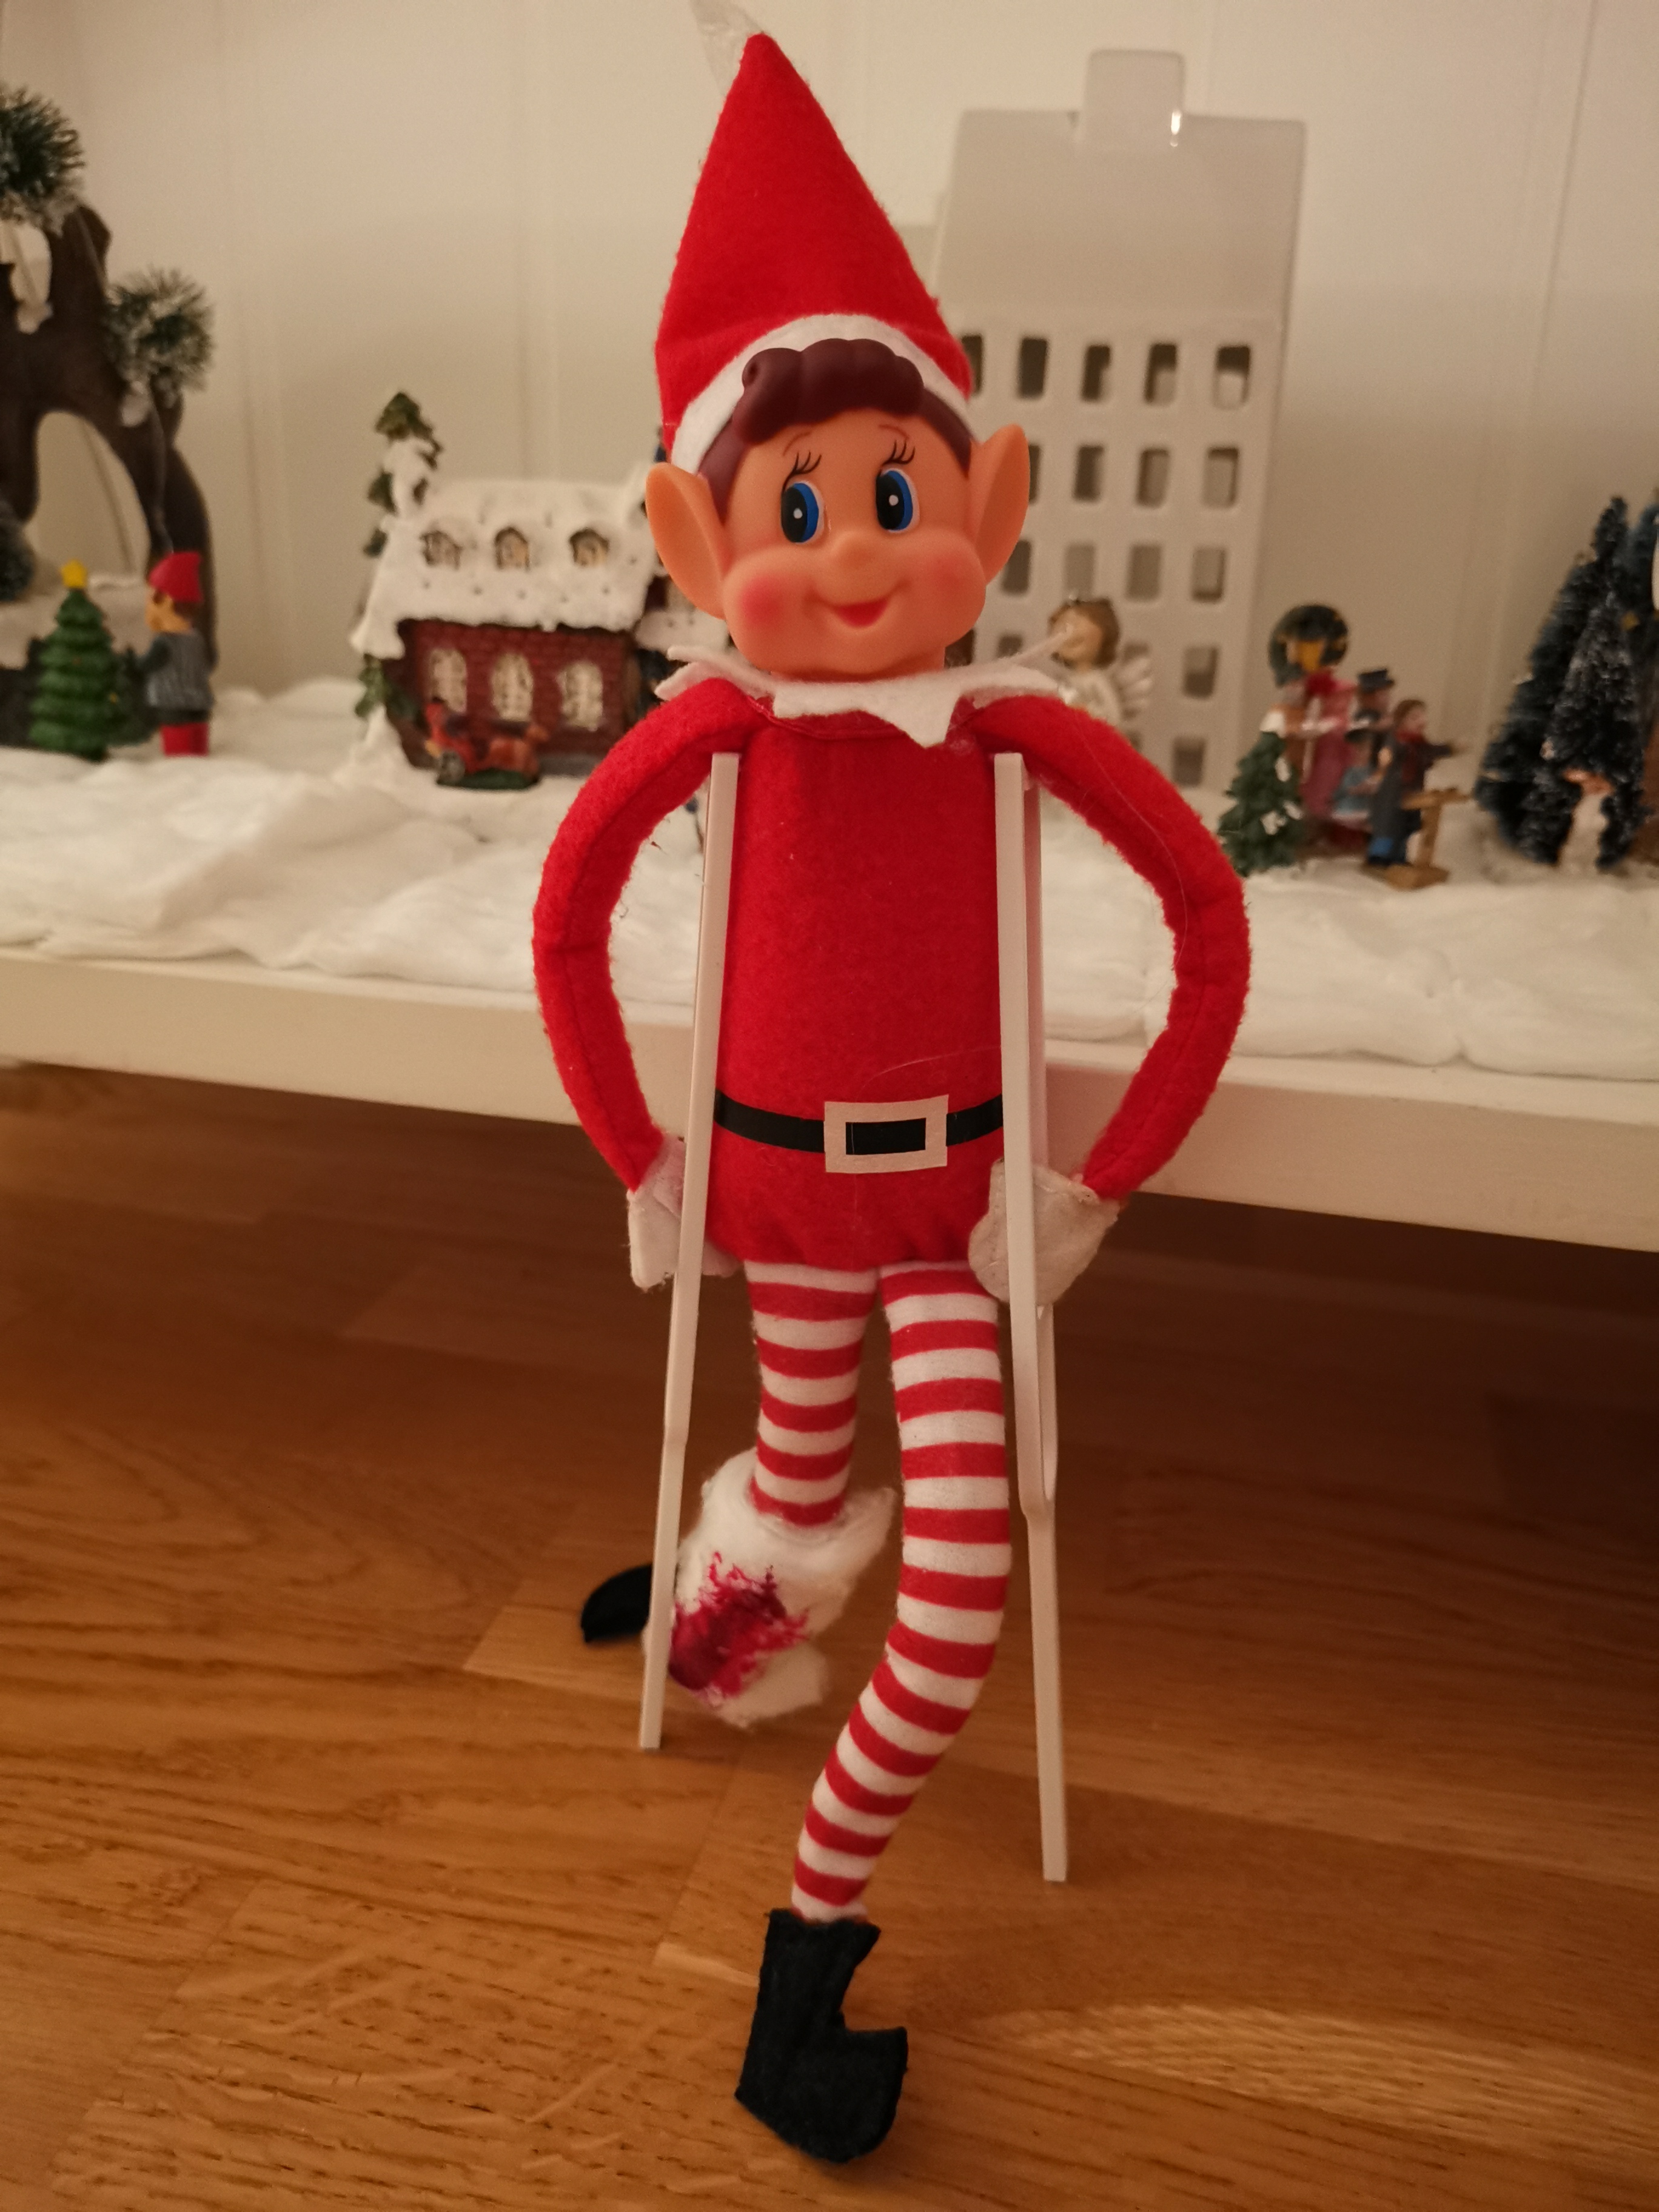 Elf on the shelf crutches